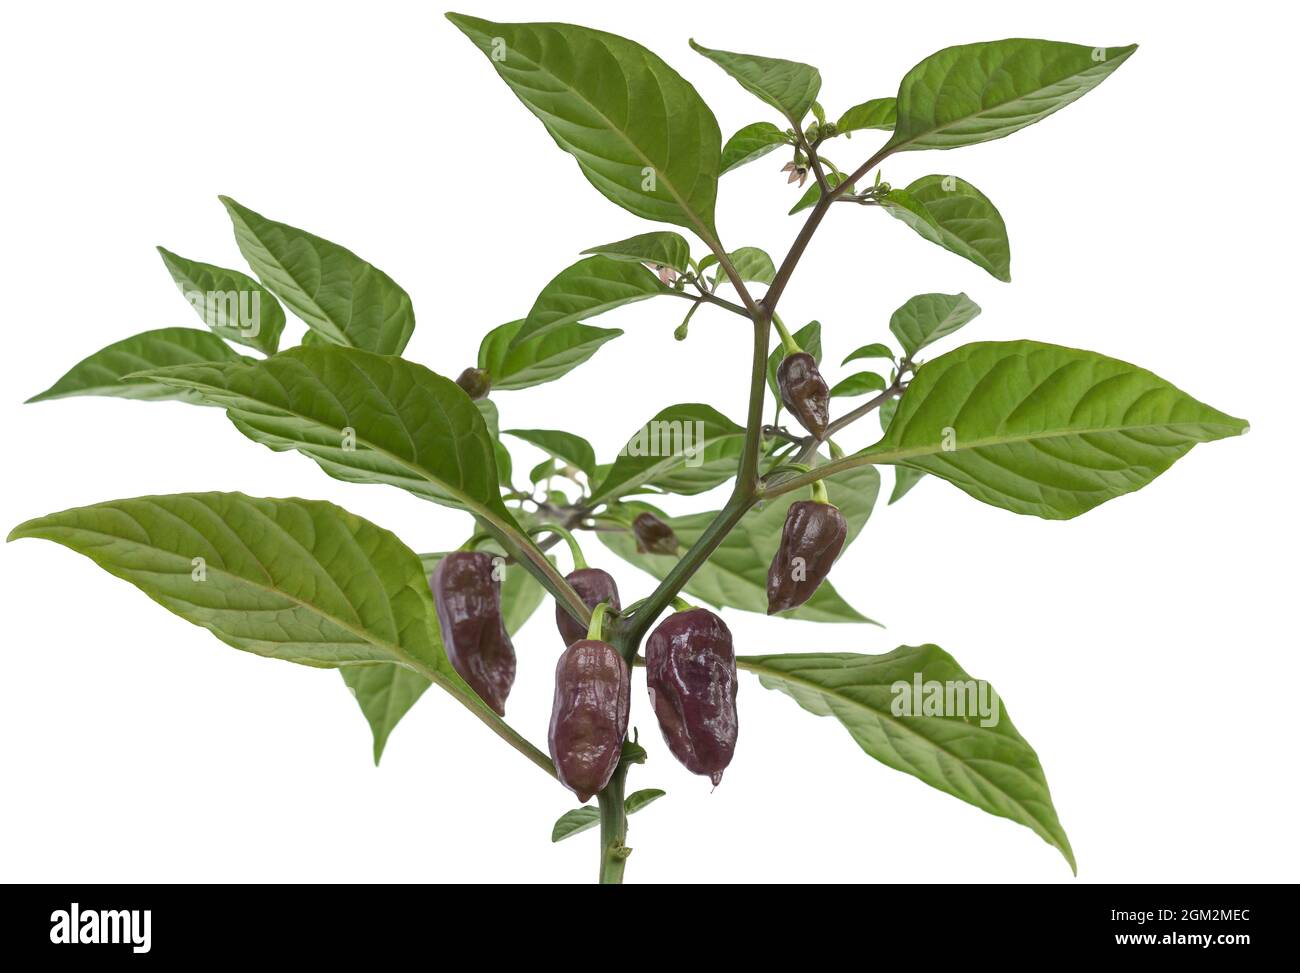 chinose au piment le plus chaud, piments habanero avec piments violets, piments verts avec feuilles et fleurs isolées en blanc Banque D'Images